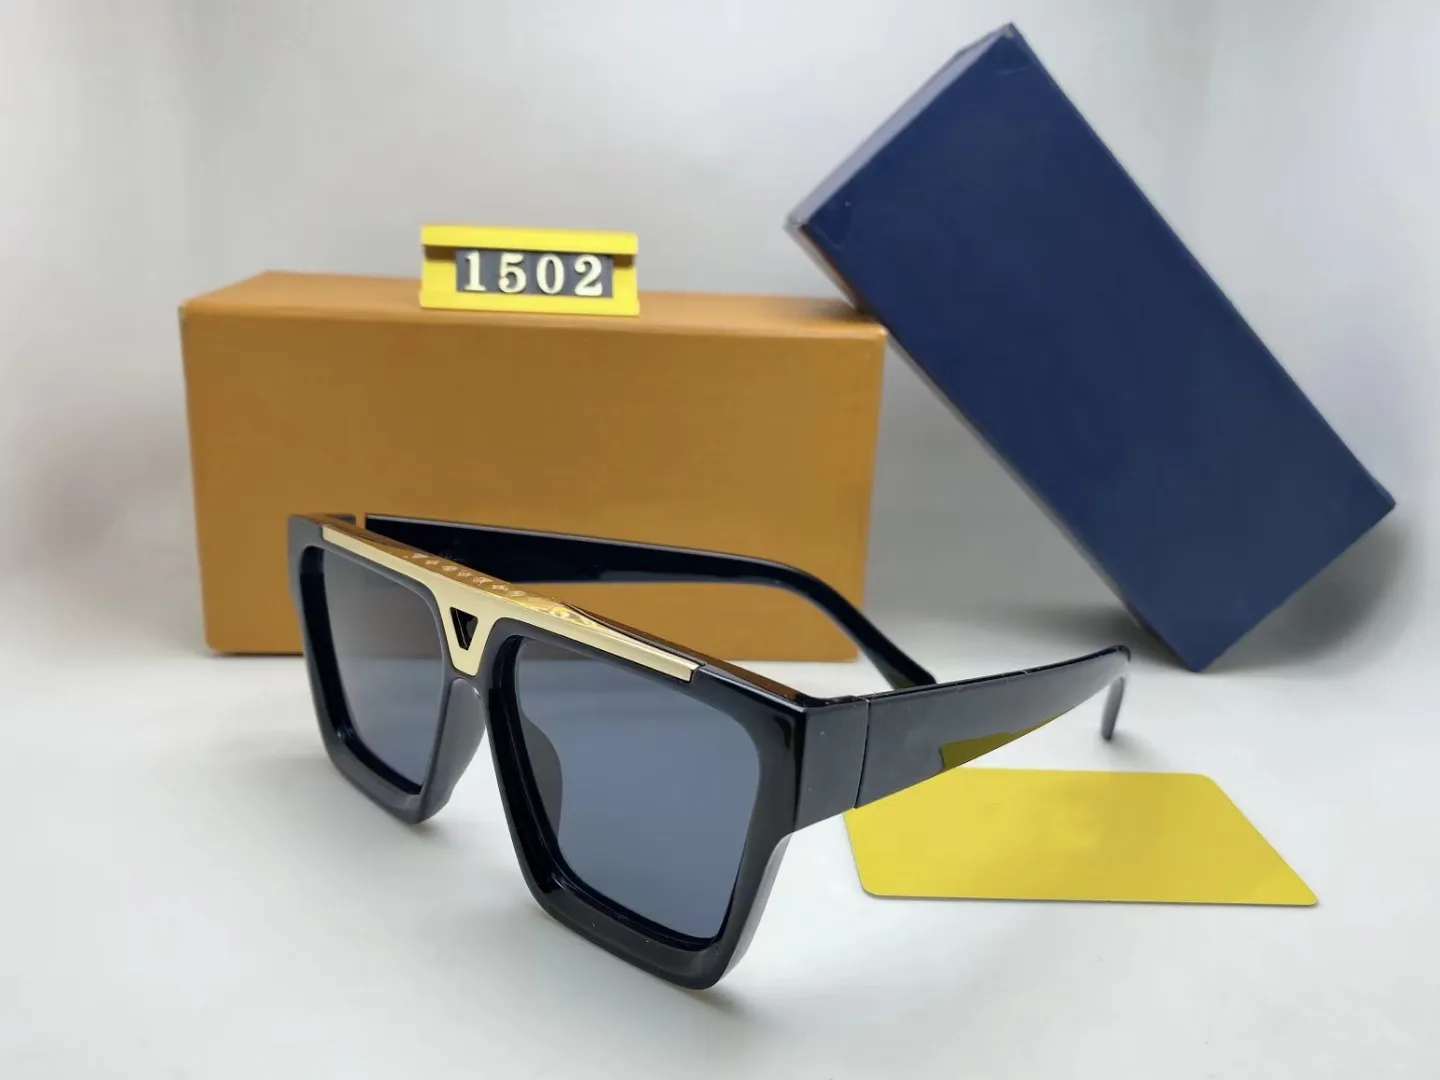 Солнцезащитные очки для женщин классическая летняя мода 1502 в стиле метал и планки каркасные очки высшее качество УФ -защиты Мужчины Мужчины